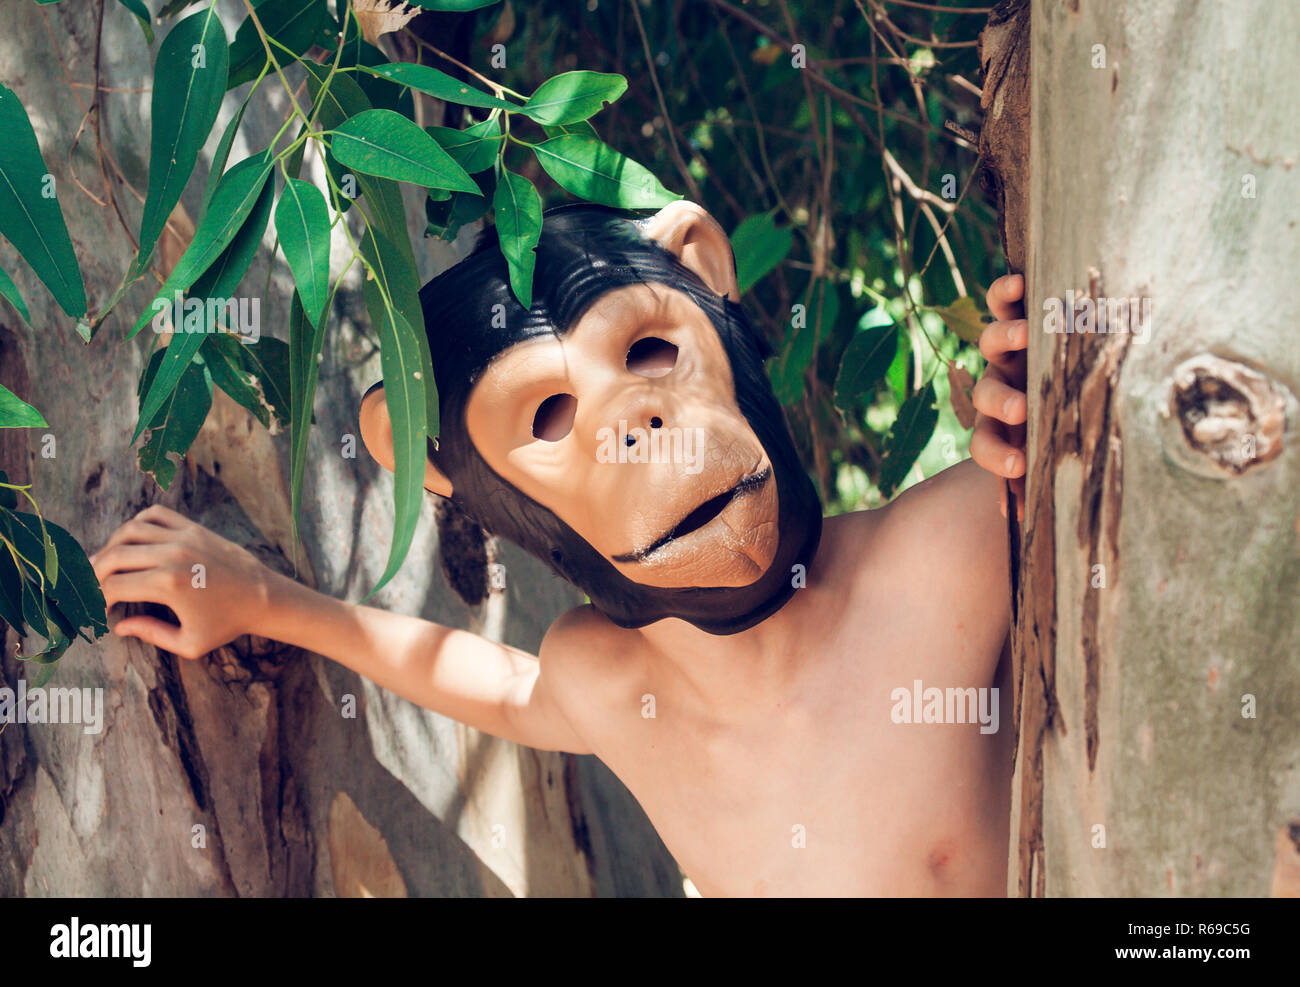 Shirtless Boy avec masque singe dans un parc Banque D'Images